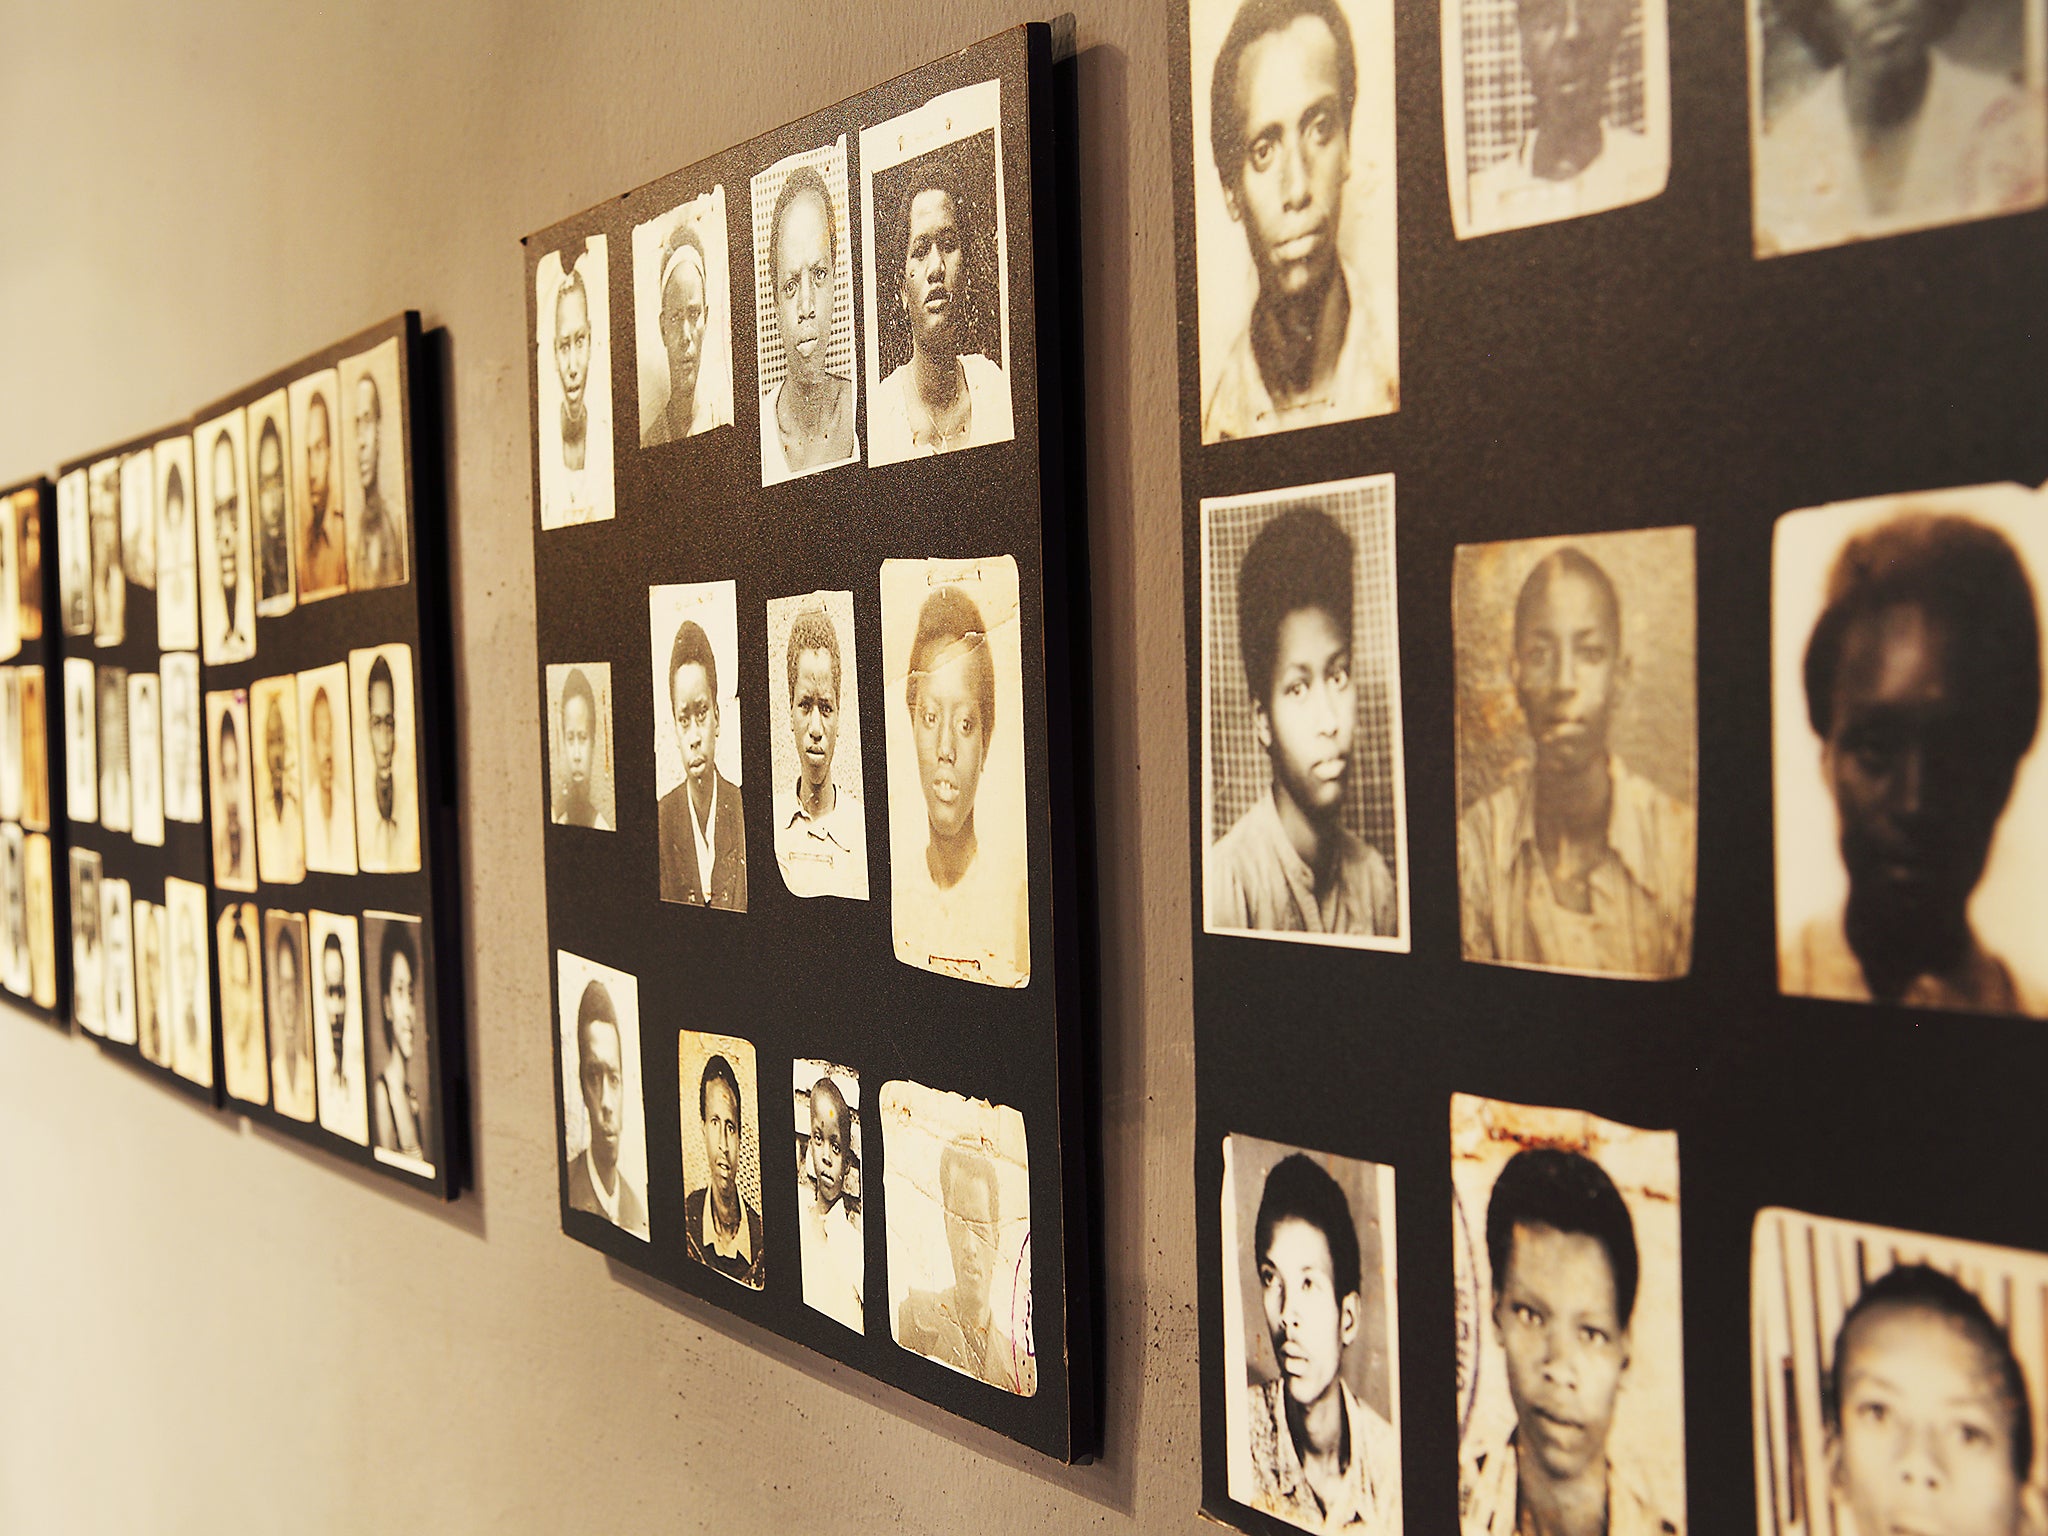 Photos of victims of the 1994 Rwanda Genocide on display at the Kigali Memorial Centre at Kigali, Rwanda